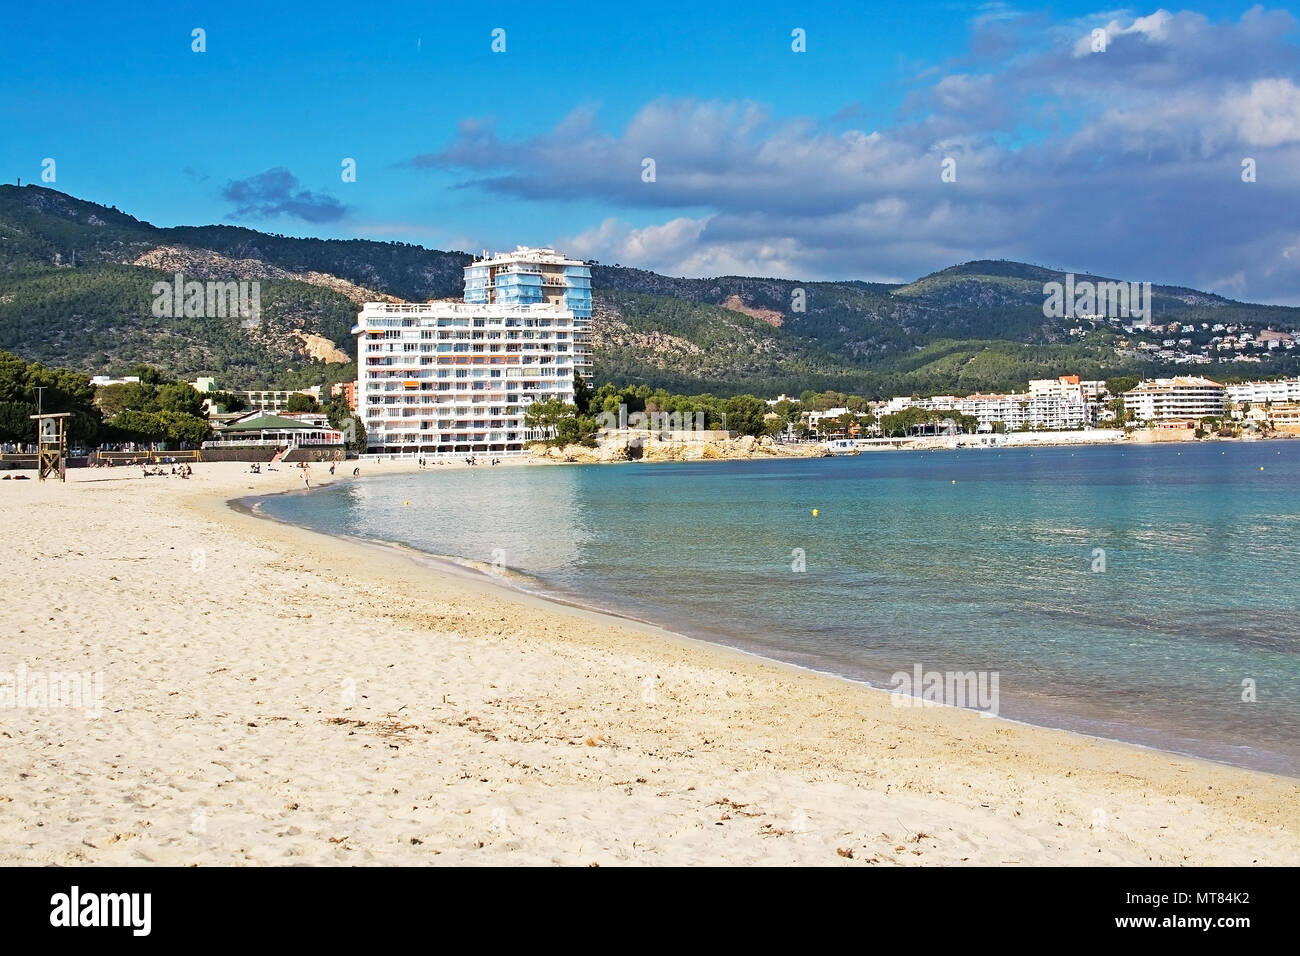 PALMA DI MALLORCA, Spagna - 17 febbraio 2018: spiaggia di Palma Nova, hotel e montagne su un nuvoloso giorno di febbraio 17, 2018 in Palma di Mallorca, Spagna. Foto Stock